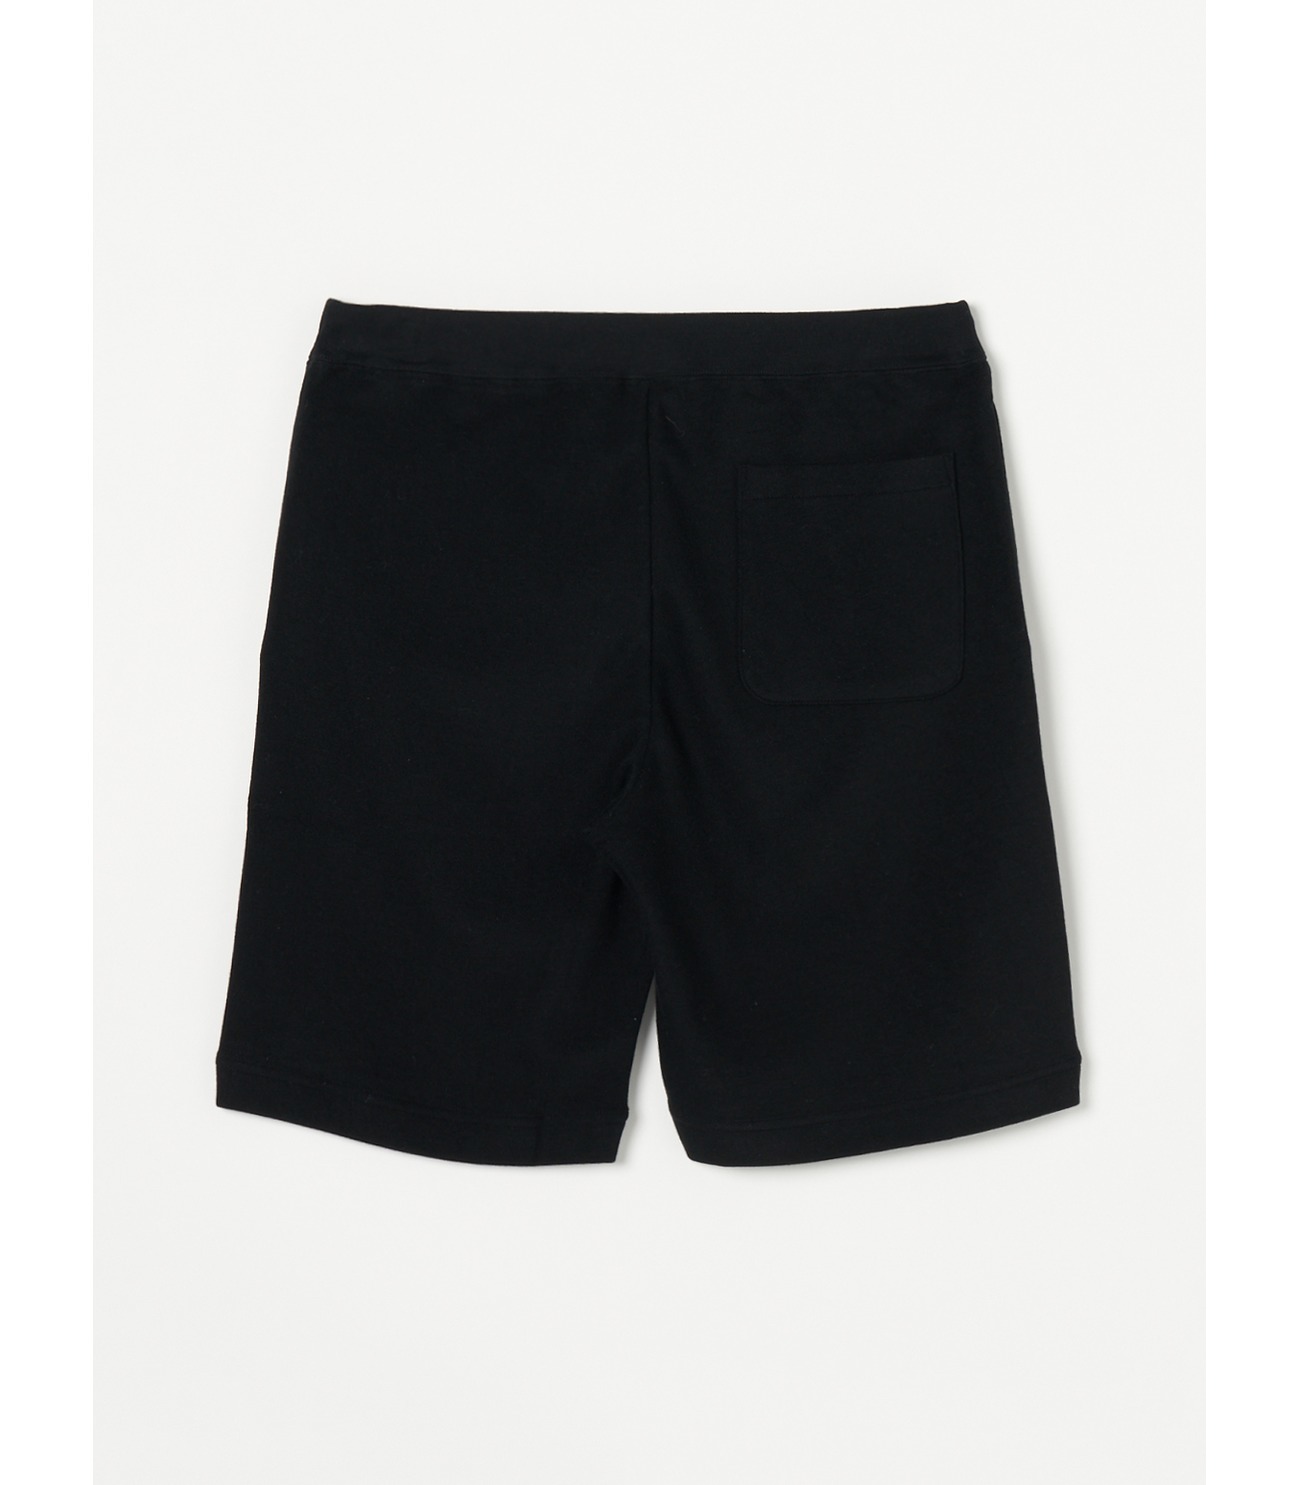 Men's compact pile shorts 詳細画像 black 1